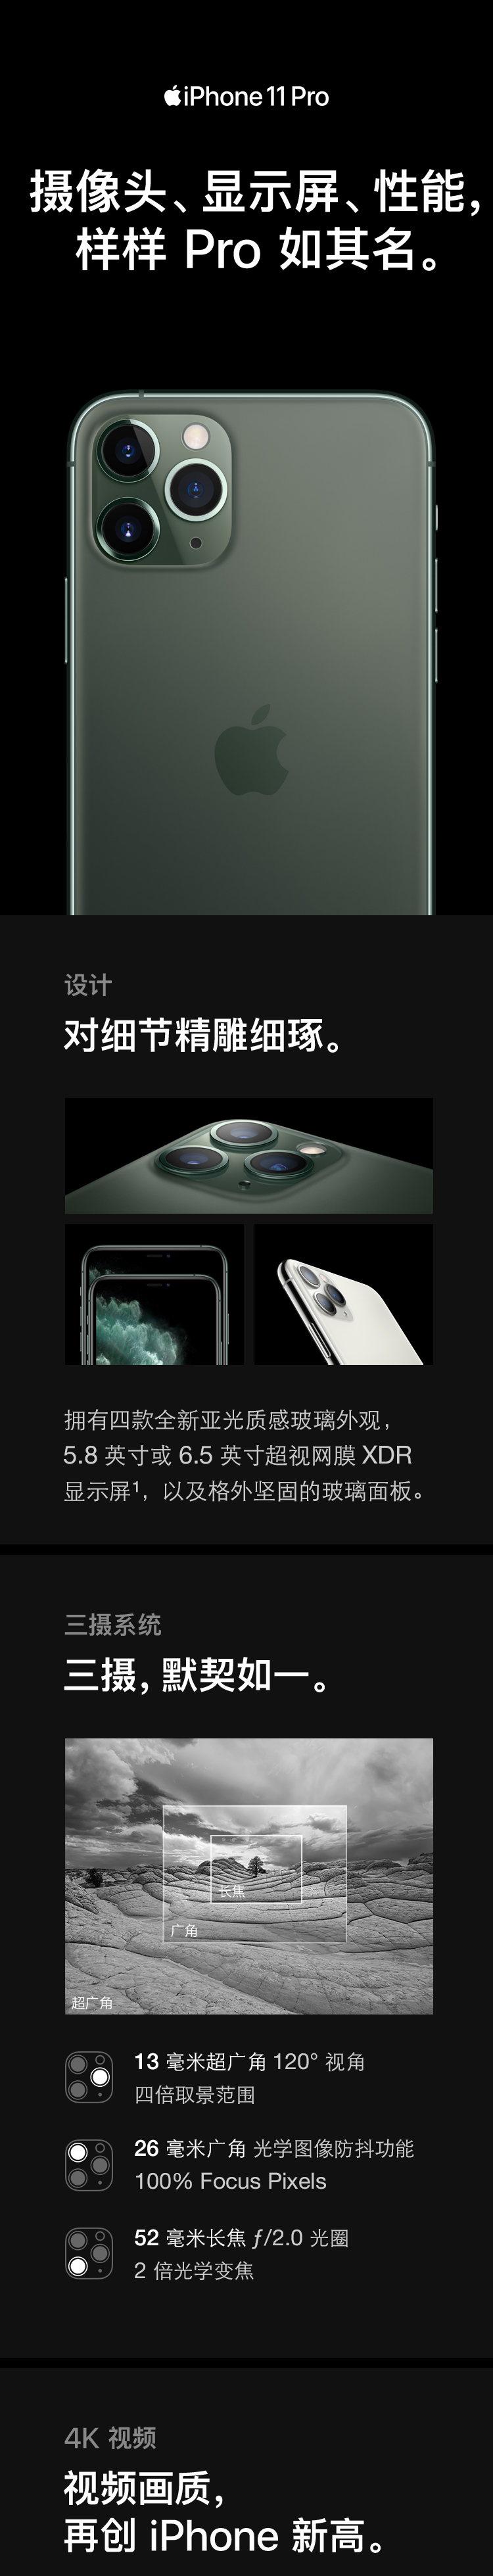 中山手机网 苹果(apple) iphone 11 pro手机专卖